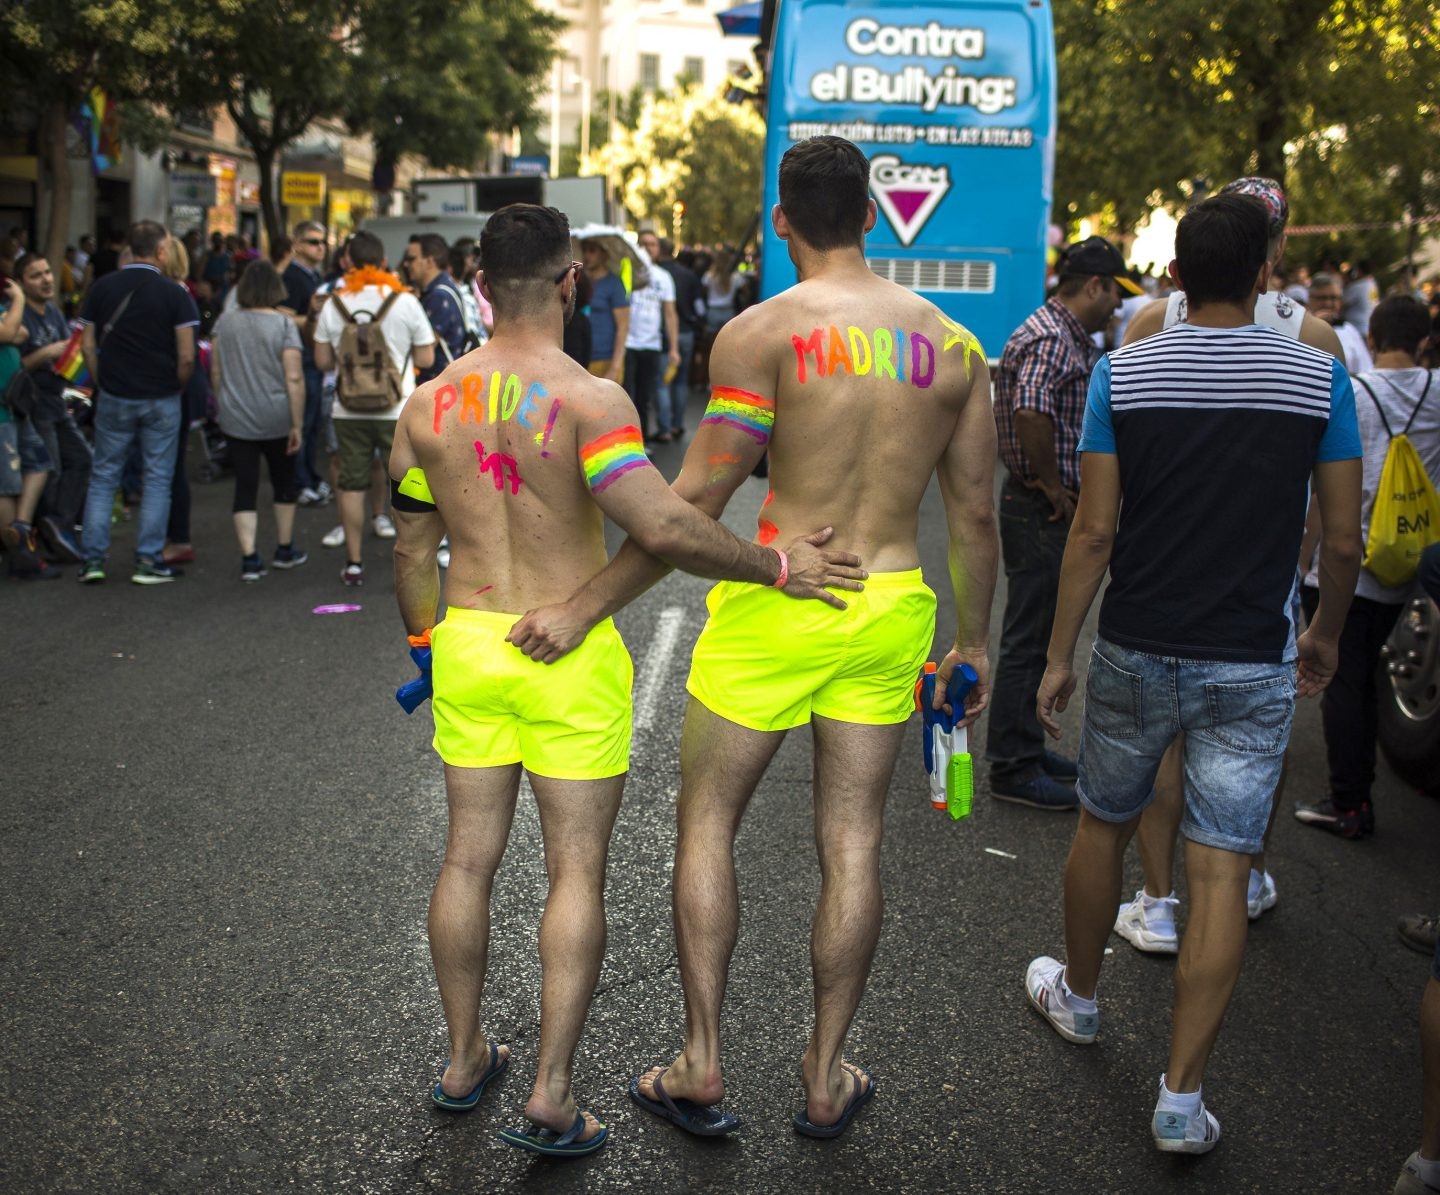 El Observatorio contra la LGTBfobia registra este año 123 incidentes de odio en Madrid